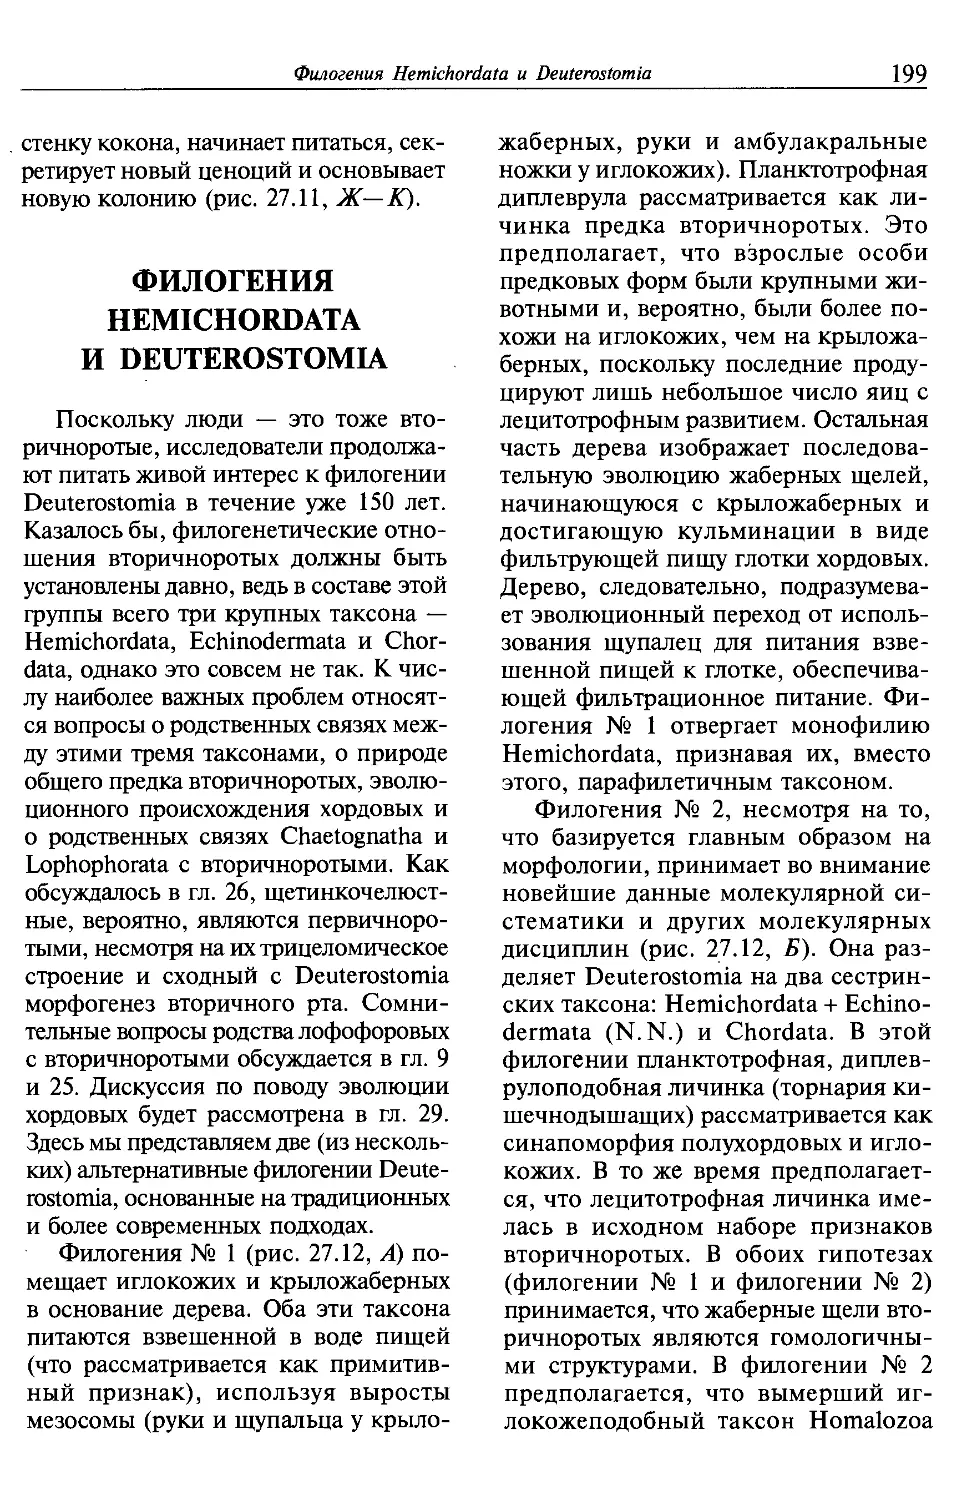 Филогения Hemichordata и Deuterostomia.